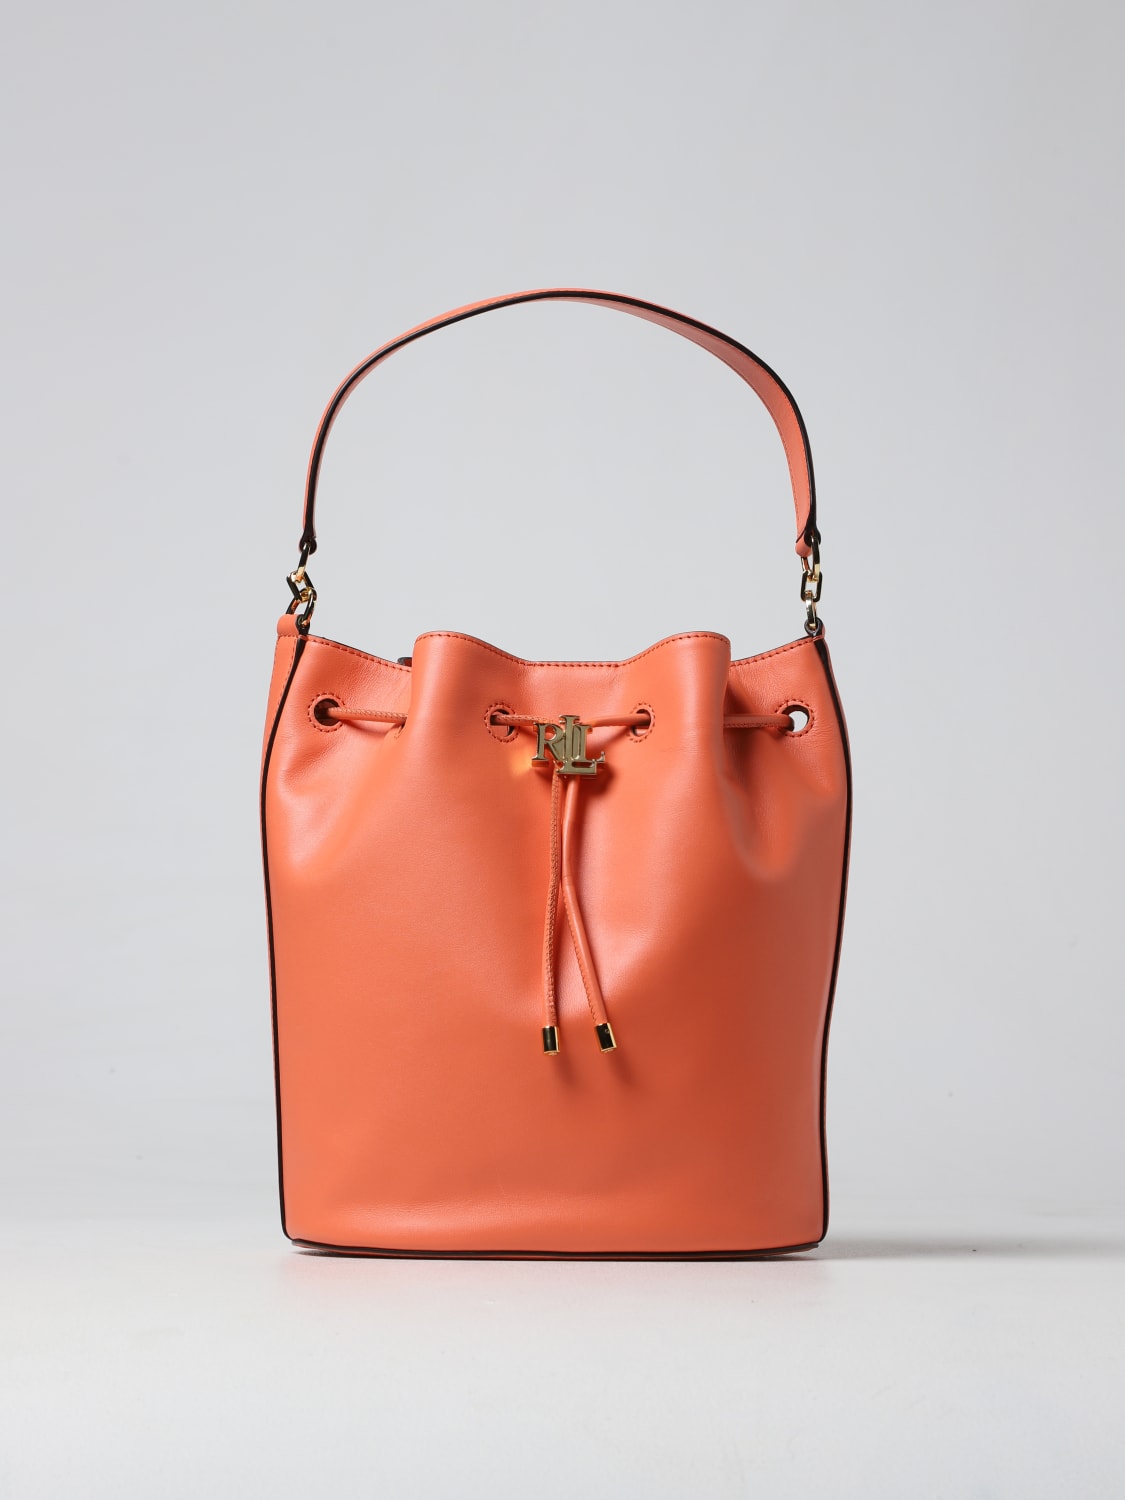 Women's Ralph Lauren Handbags, Bags & Purses